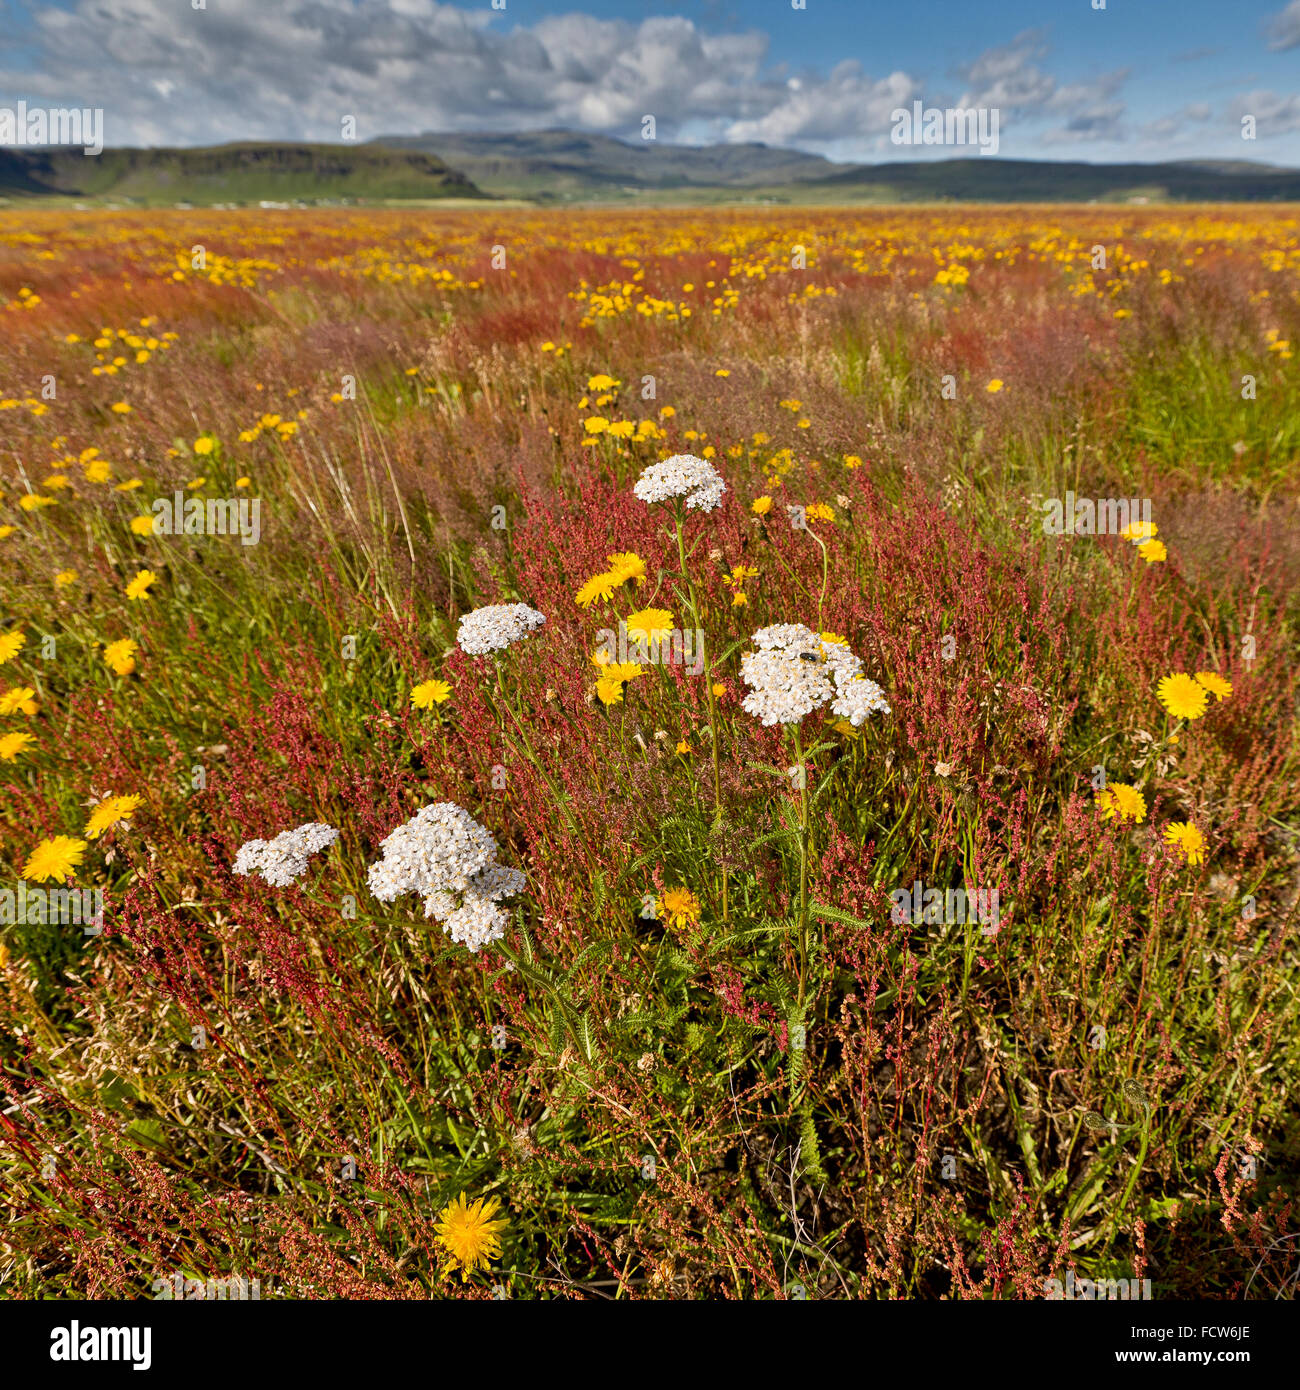 Wildflowers in the summer, Kirkjubaejarlaustur, Iceland Stock Photo